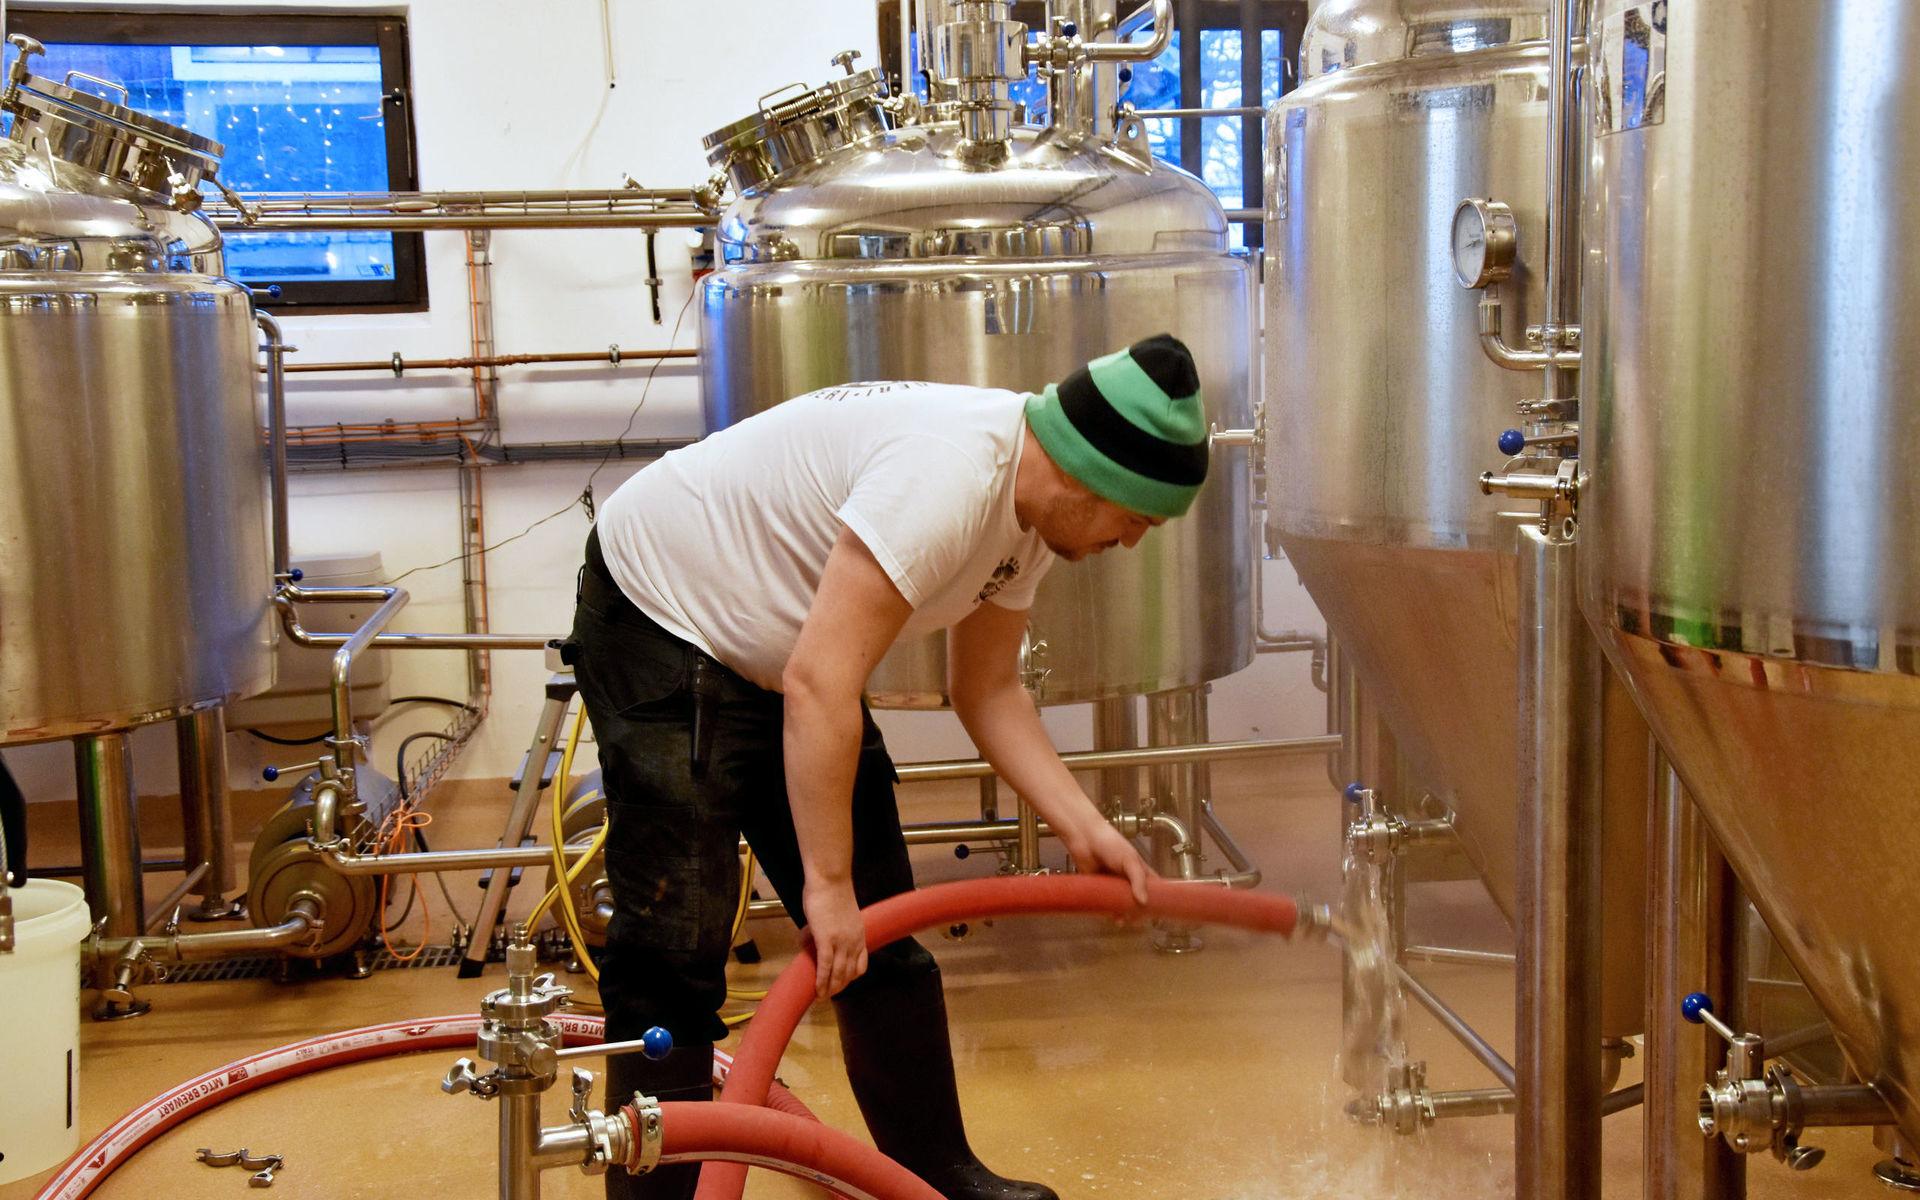 Martin ägnar ungefär tre långa dagar i veckan i bryggeriet och får hjälp av sambon Titti Larsson med bland annat hemsidan.